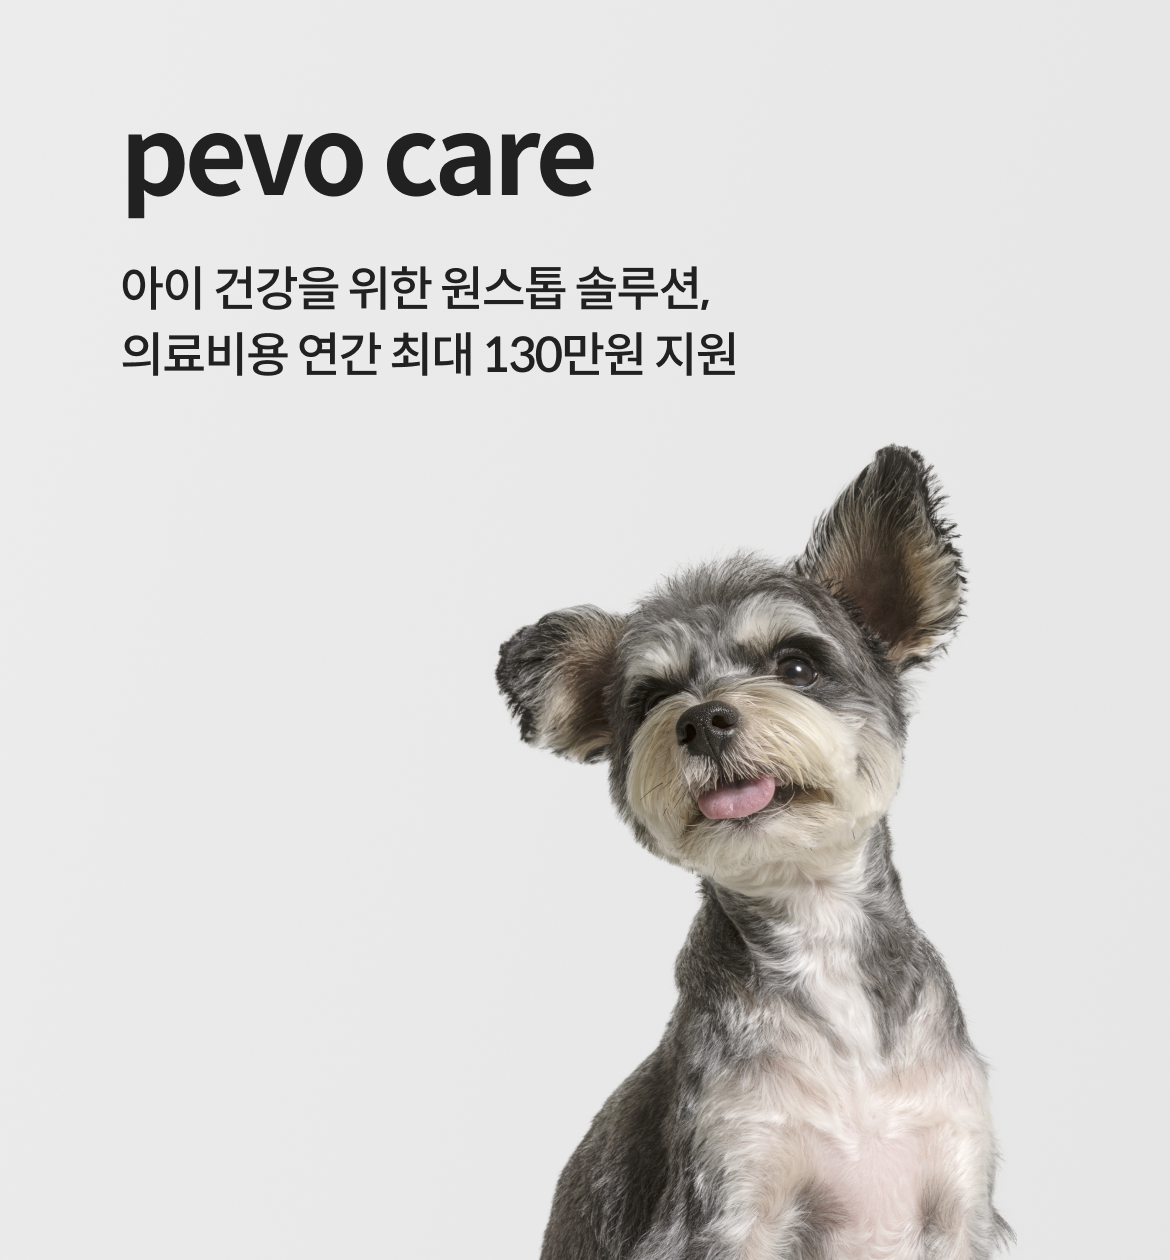 pevo care 우리 아이 건강을 위한 원스톱 솔루션, 의료비용 연간 최대 130만원 지원